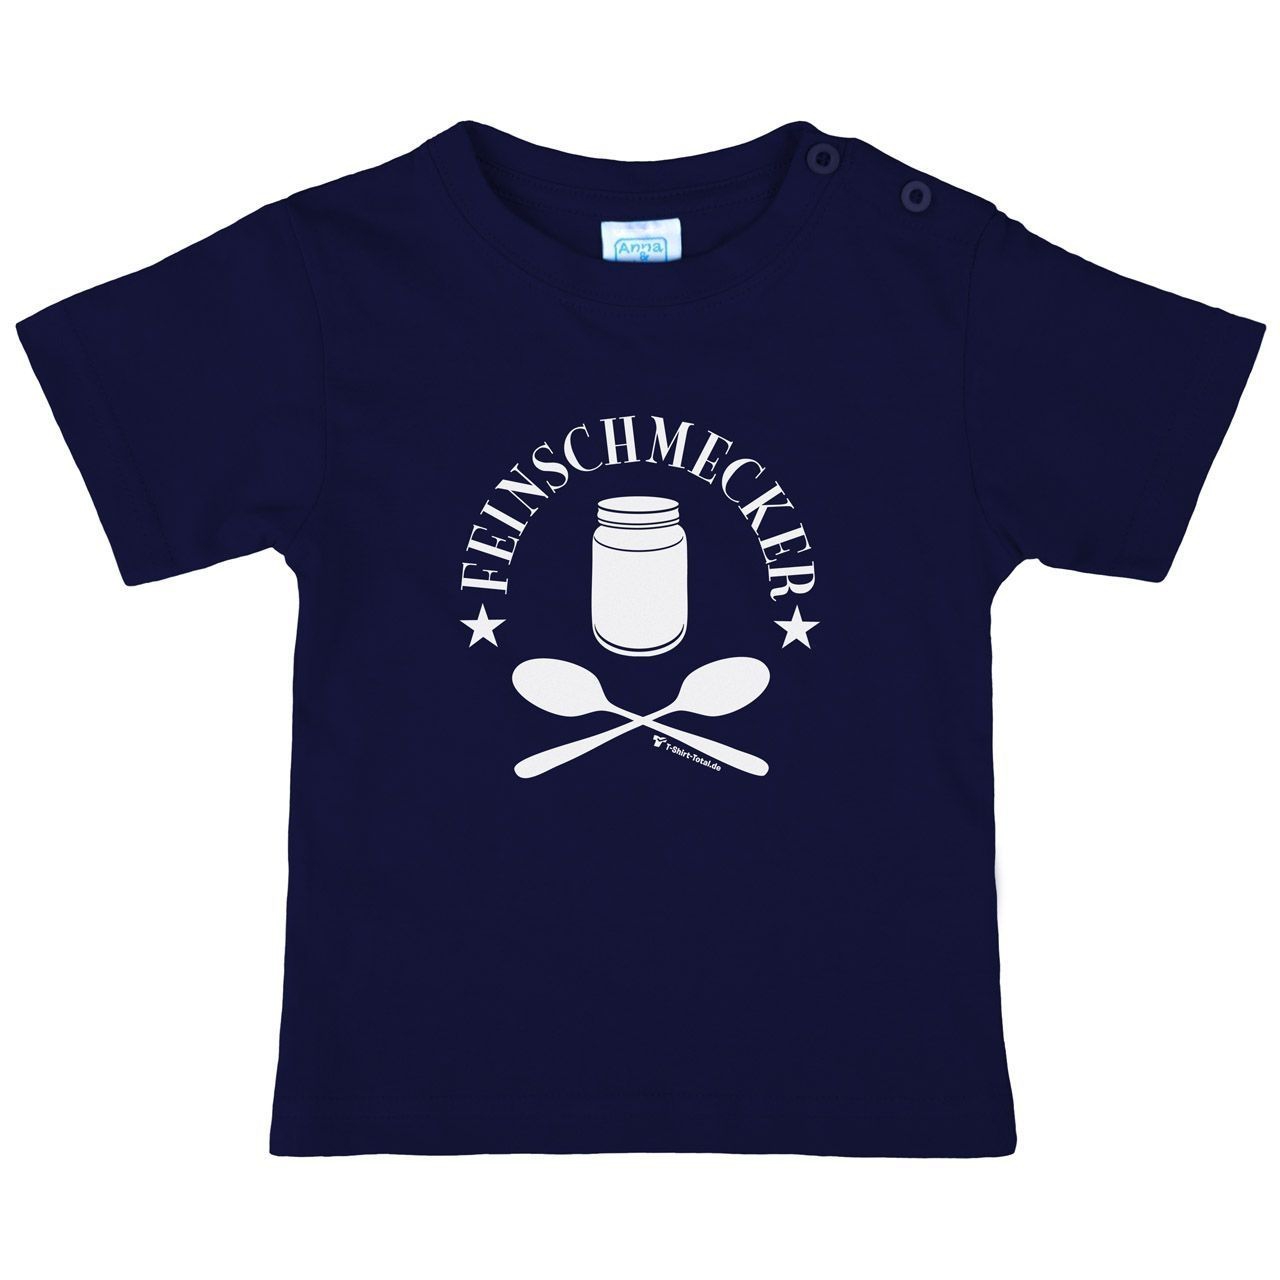 Feinschmecker Kinder T-Shirt navy 56 / 62